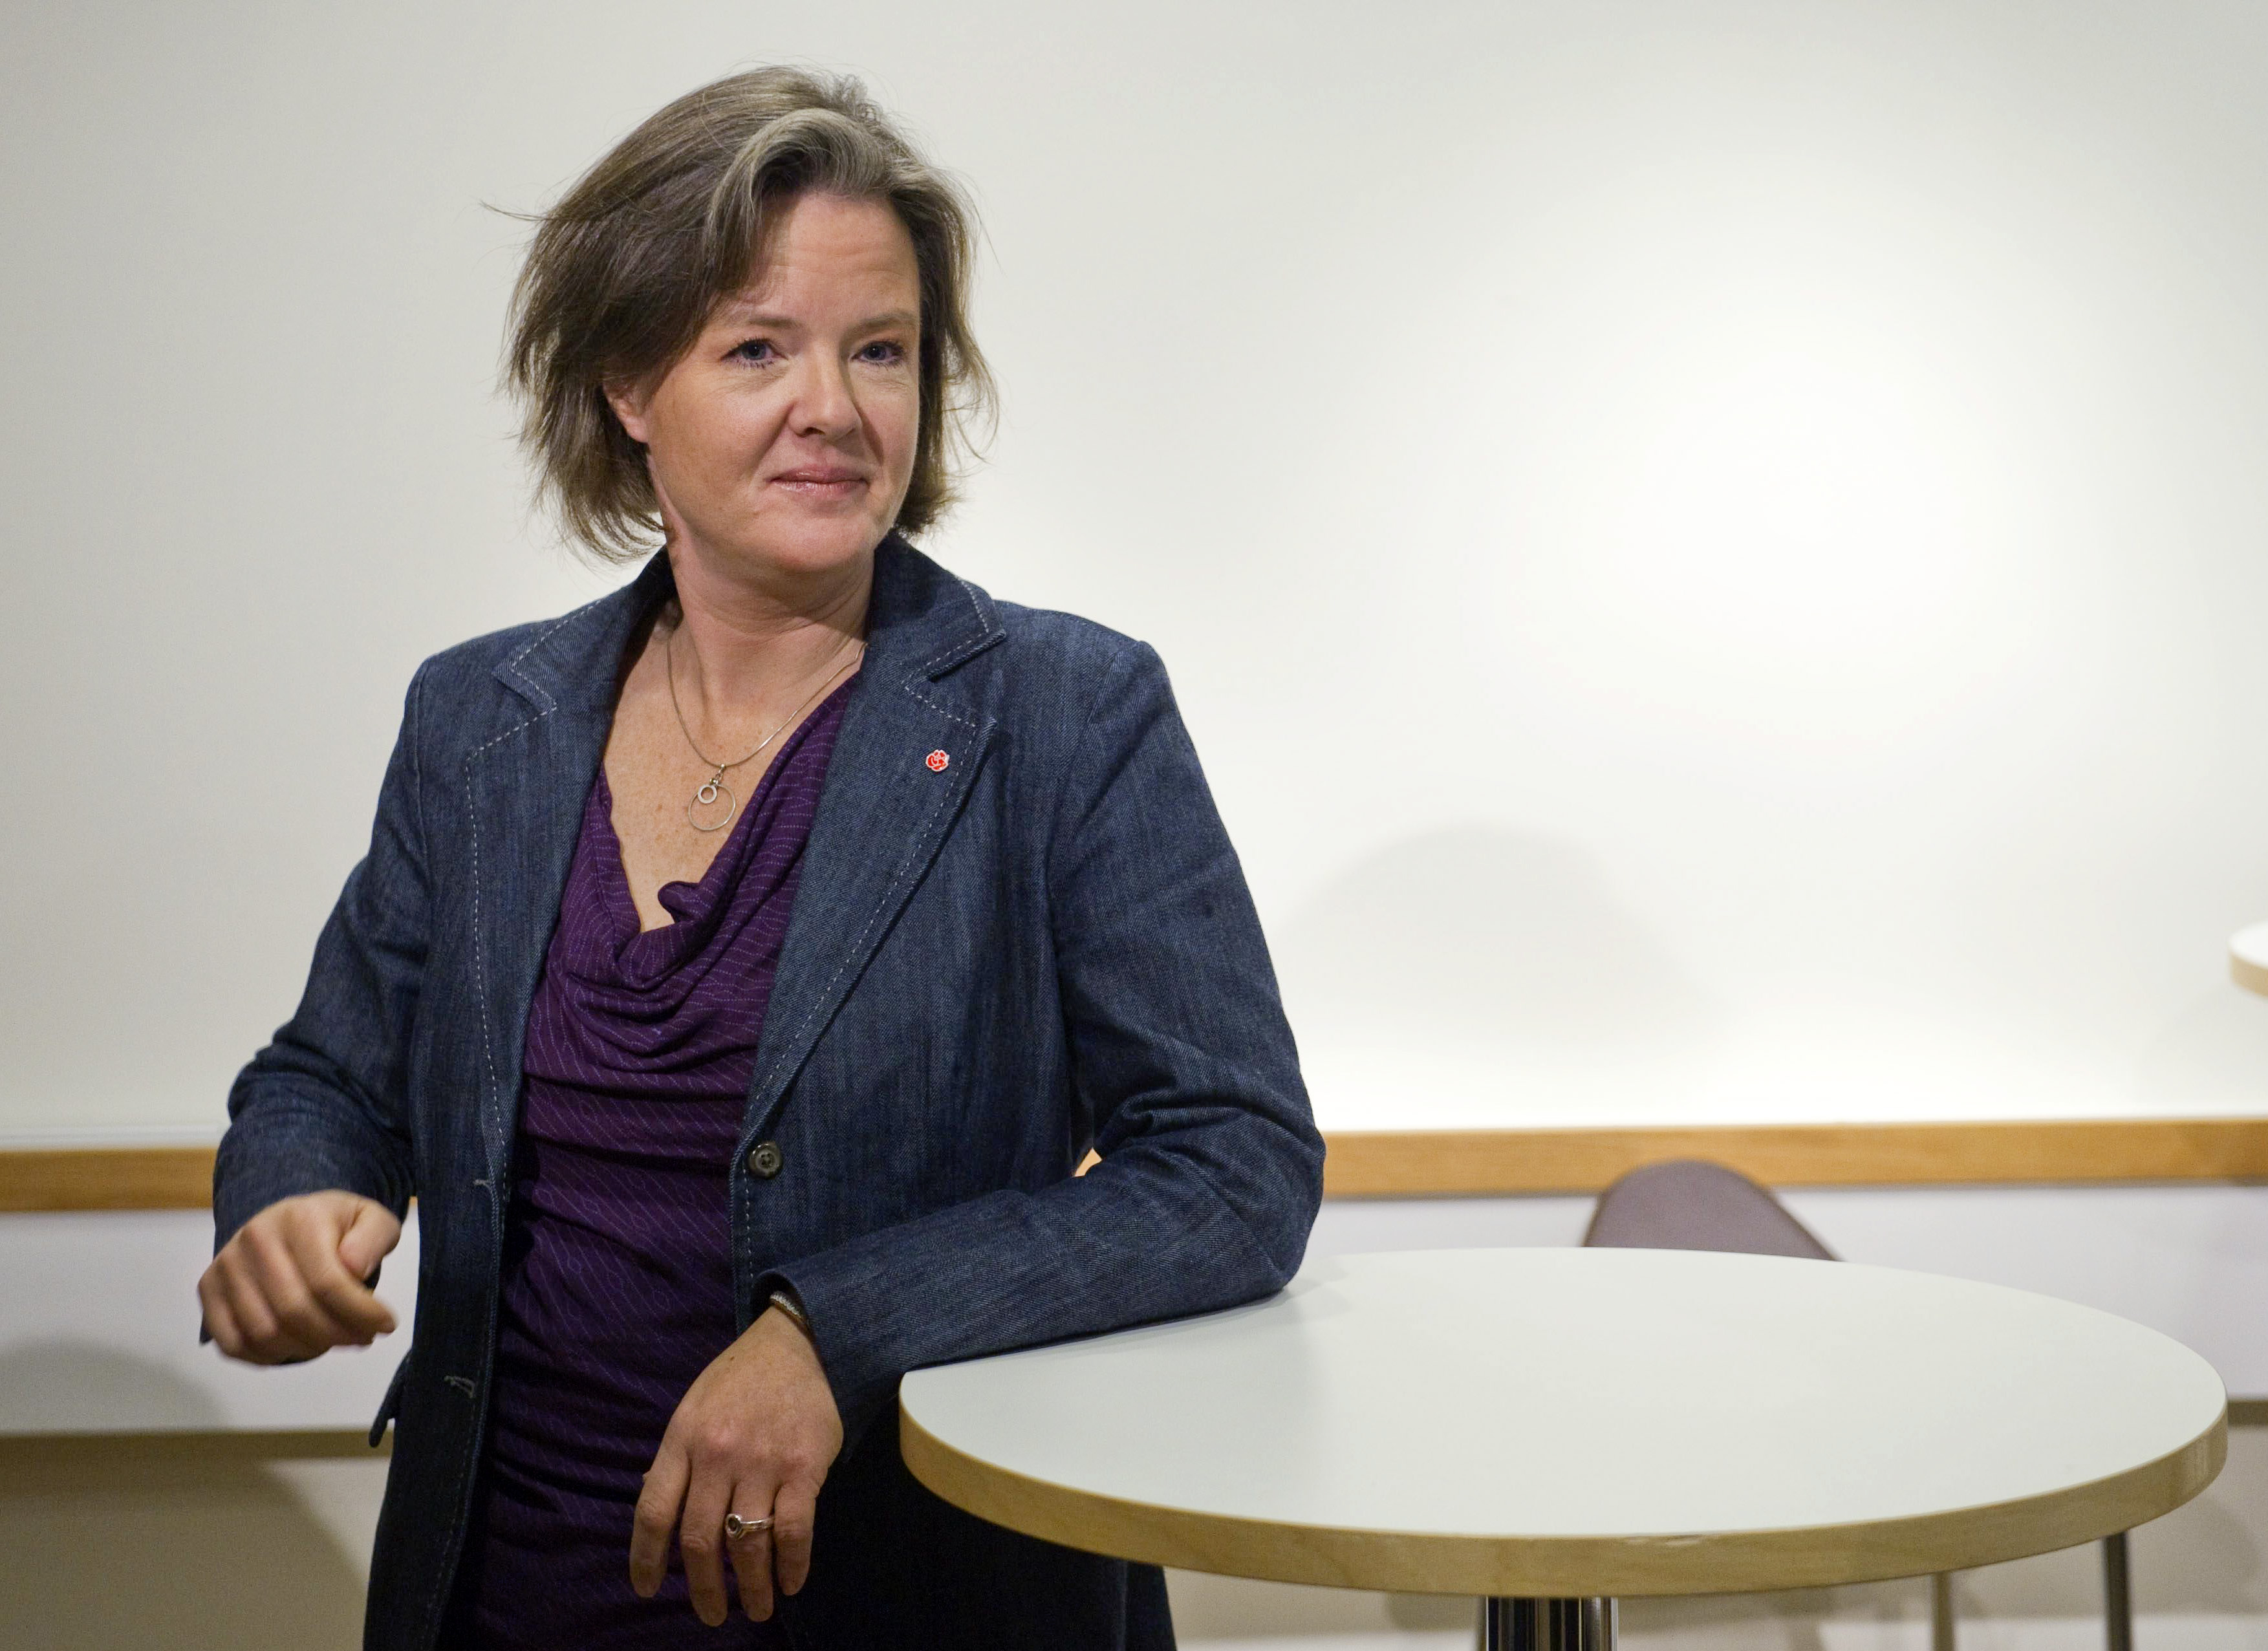 Oppositionen, Socialdemokraterna, Håkan Juholt, Partiledare, Politik